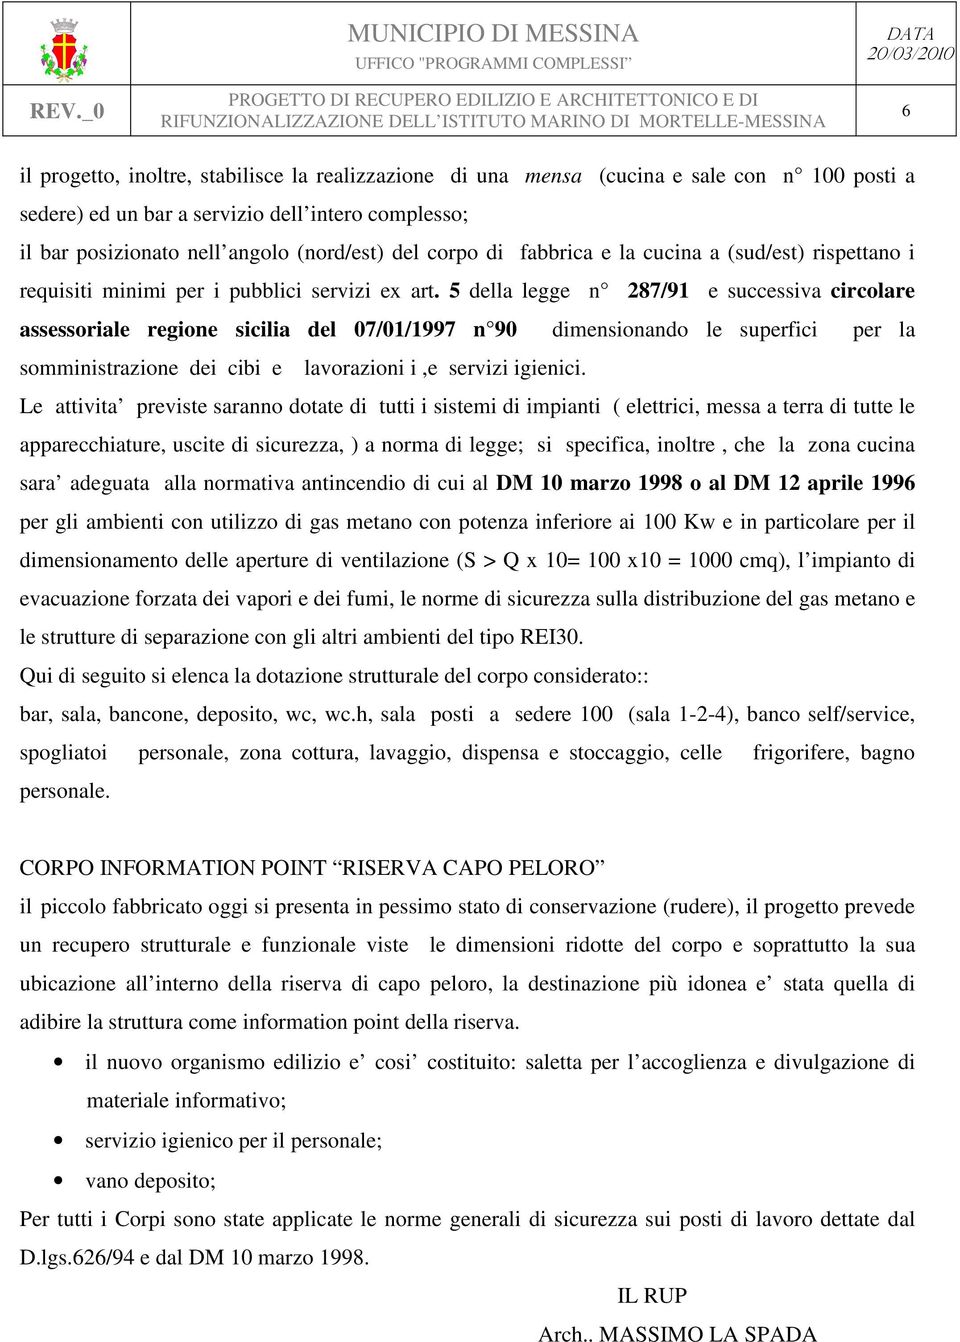 5 della legge n 287/91 e successiva circolare assessoriale regione sicilia del 07/01/1997 n 90 dimensionando le superfici per la somministrazione dei cibi e lavorazioni i,e servizi igienici.